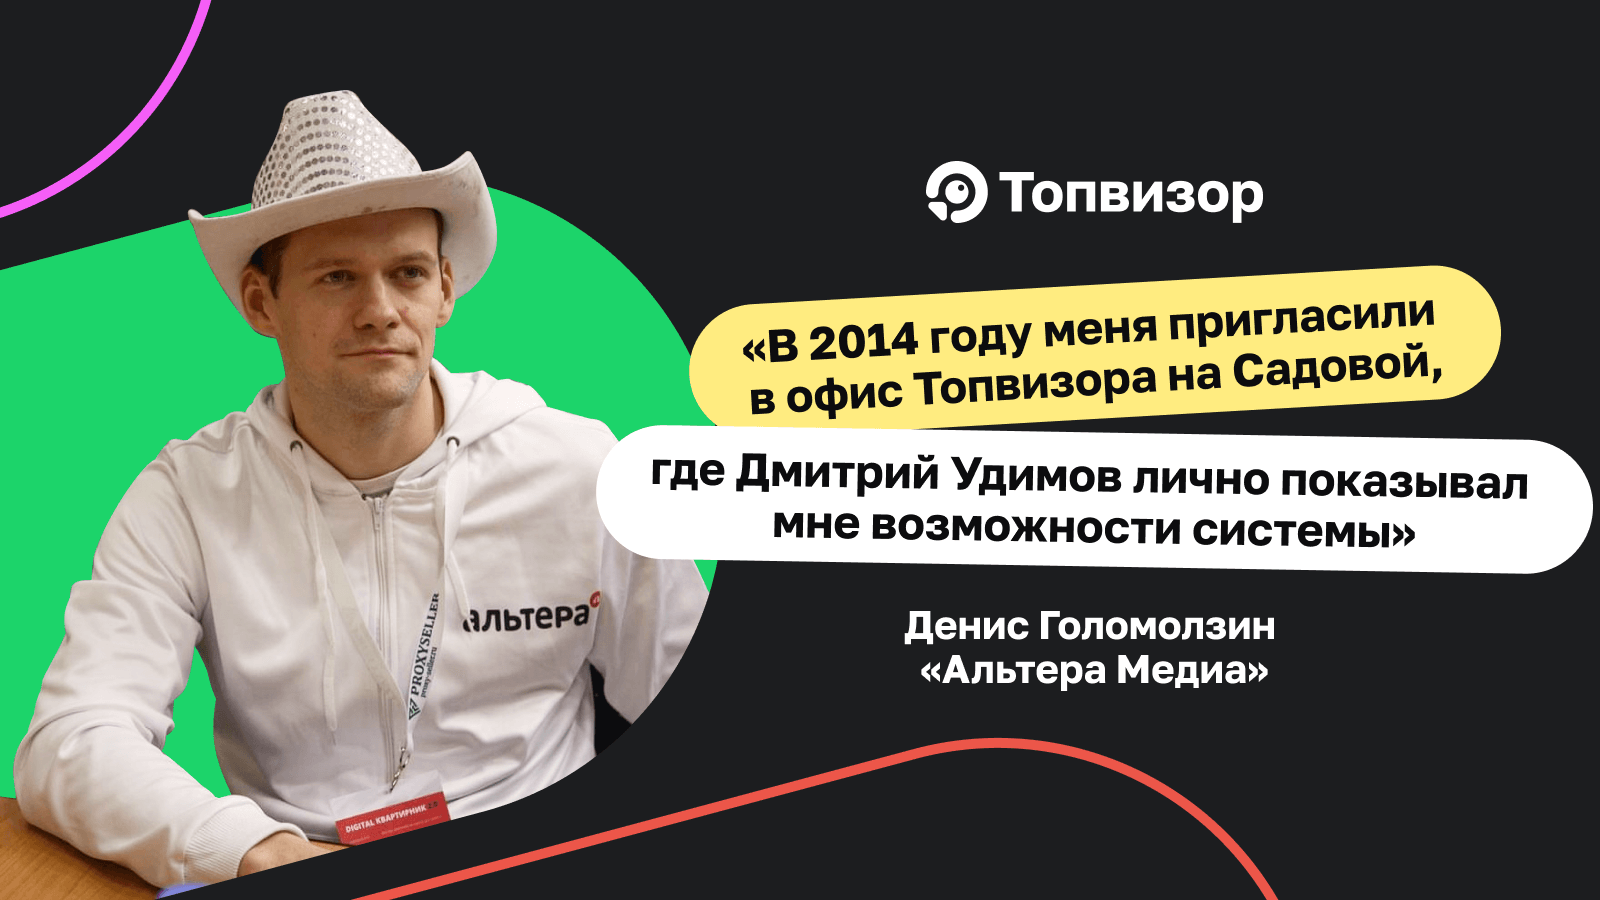 «В июне 2014 года меня пригласили в офис Топвизора на Садовой, где Дмитрий Удимов лично показывал мне возможности системы» — кейс о том, что перейти в Топвизор никогда не поздно